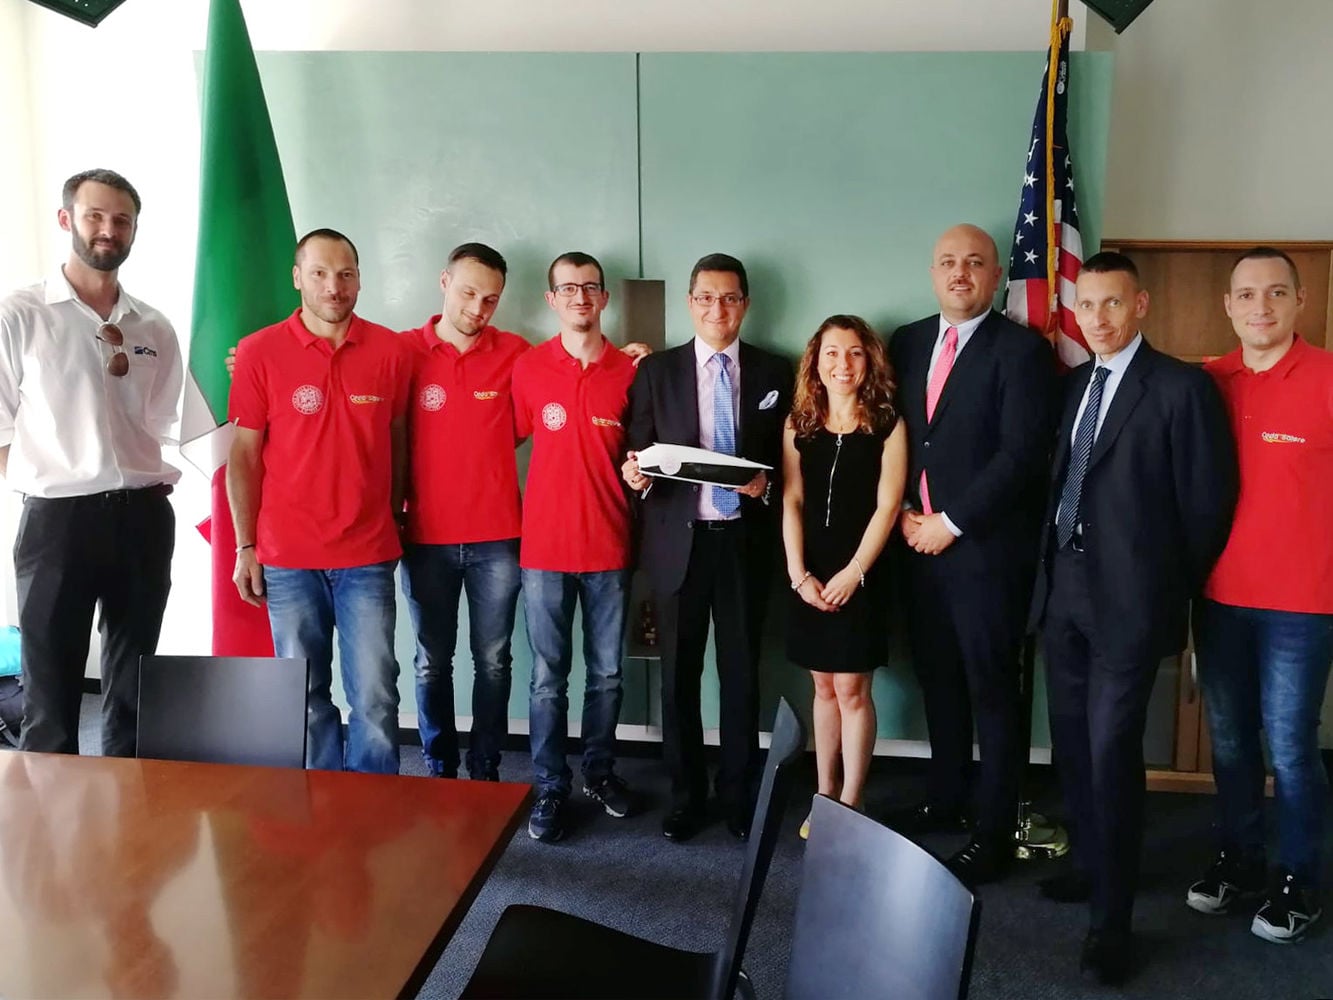 Scm Group und Cms, zusammen mit dem Team von Onda Solare, zu Besuch beim Italienischen Konsulat in Chicago